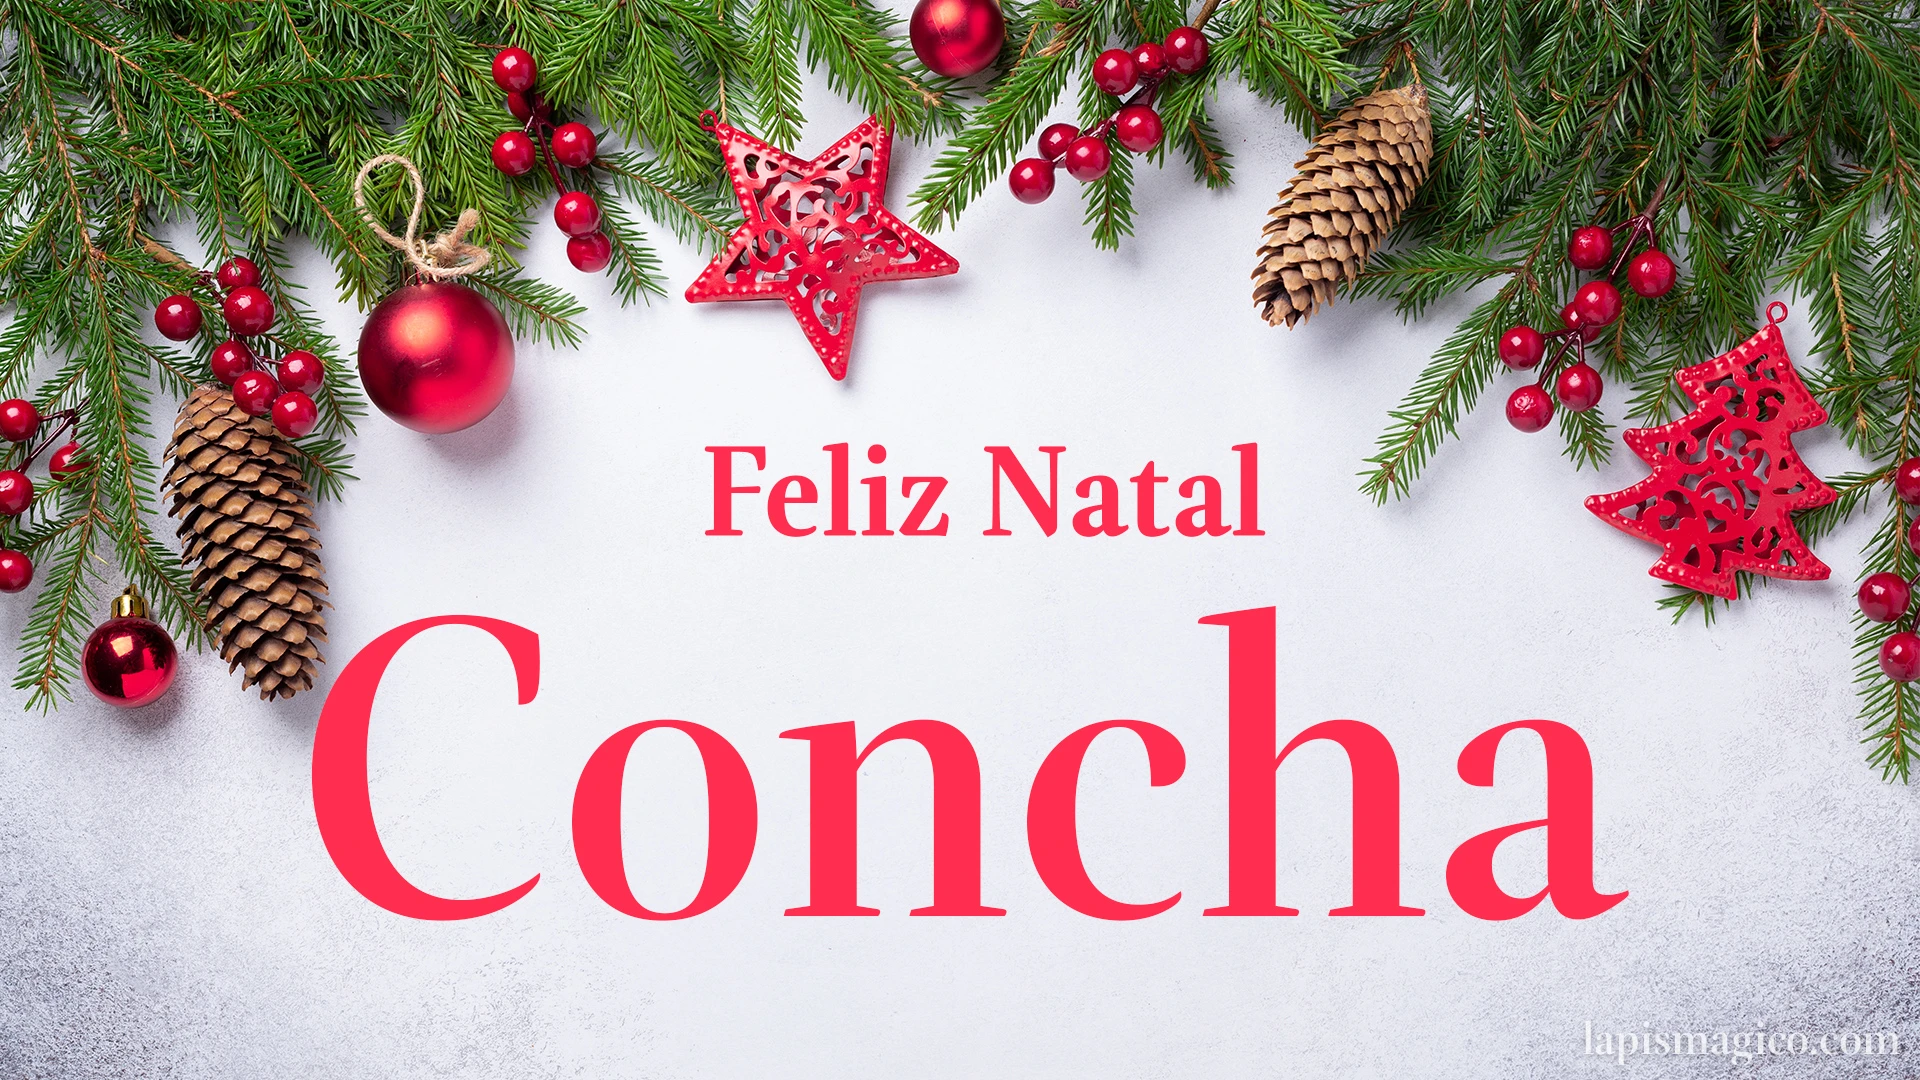 Oh Concha, cinco postais de Feliz Natal Postal com o teu nome